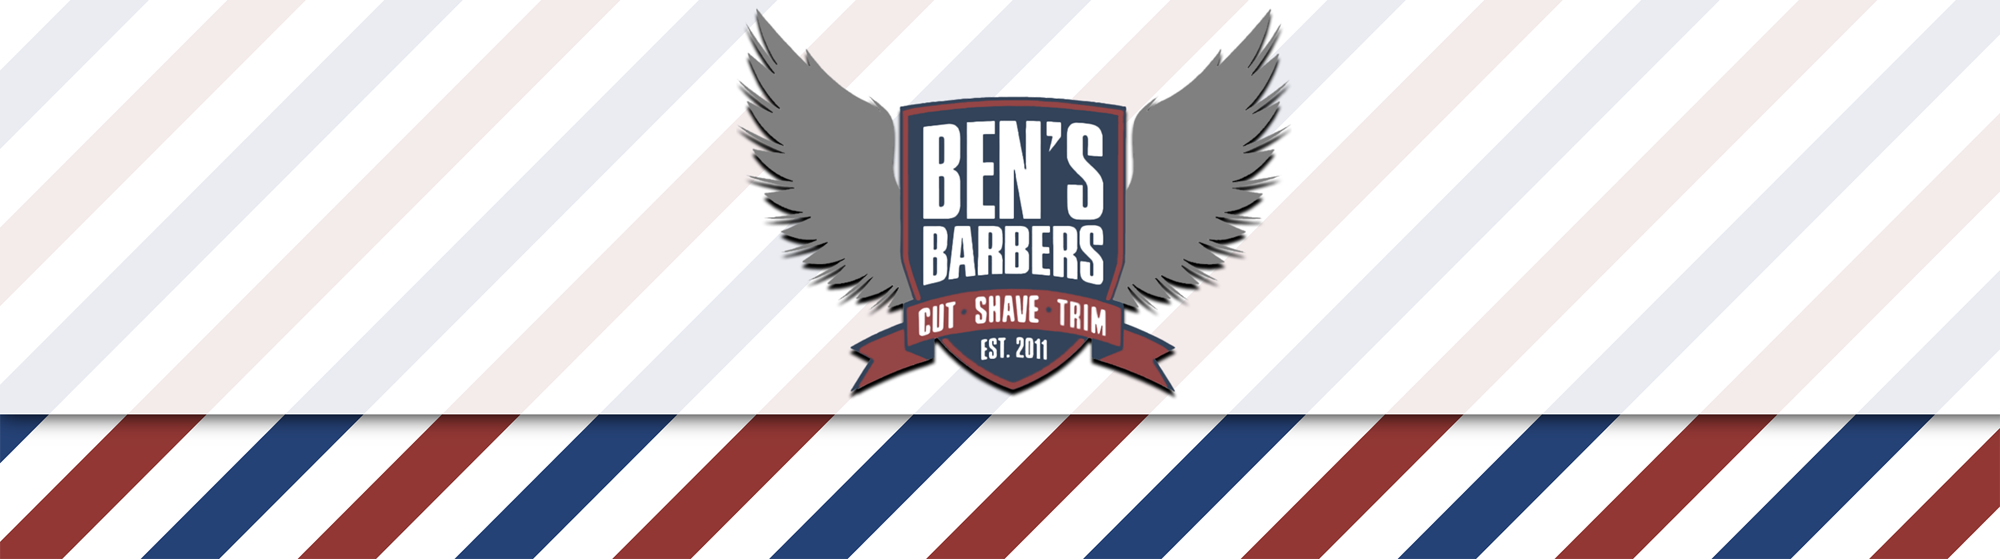 Ben's Barbers